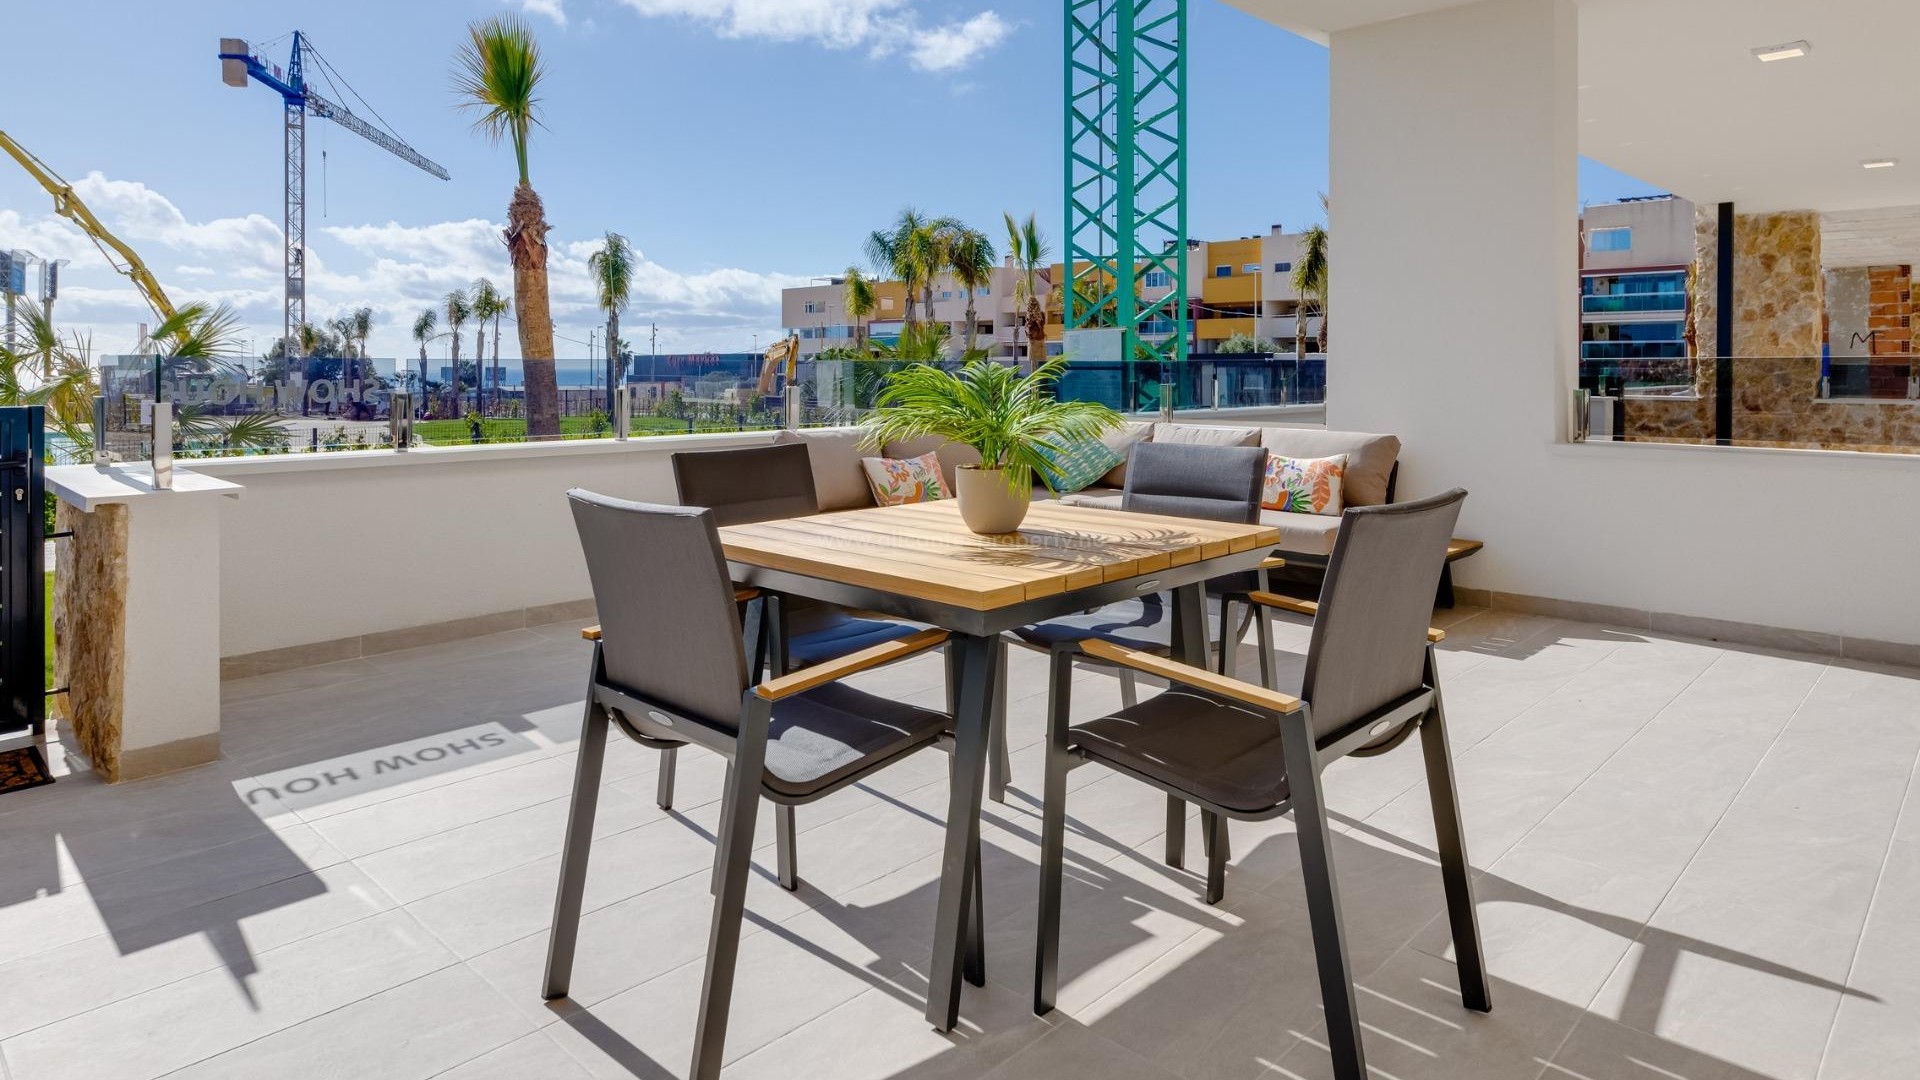 Luksus-leiligheter og toppleiligheter i Playa Flamenca, havutsikt, store terrasser/solarium, felles pool og treningsstudio med badstue